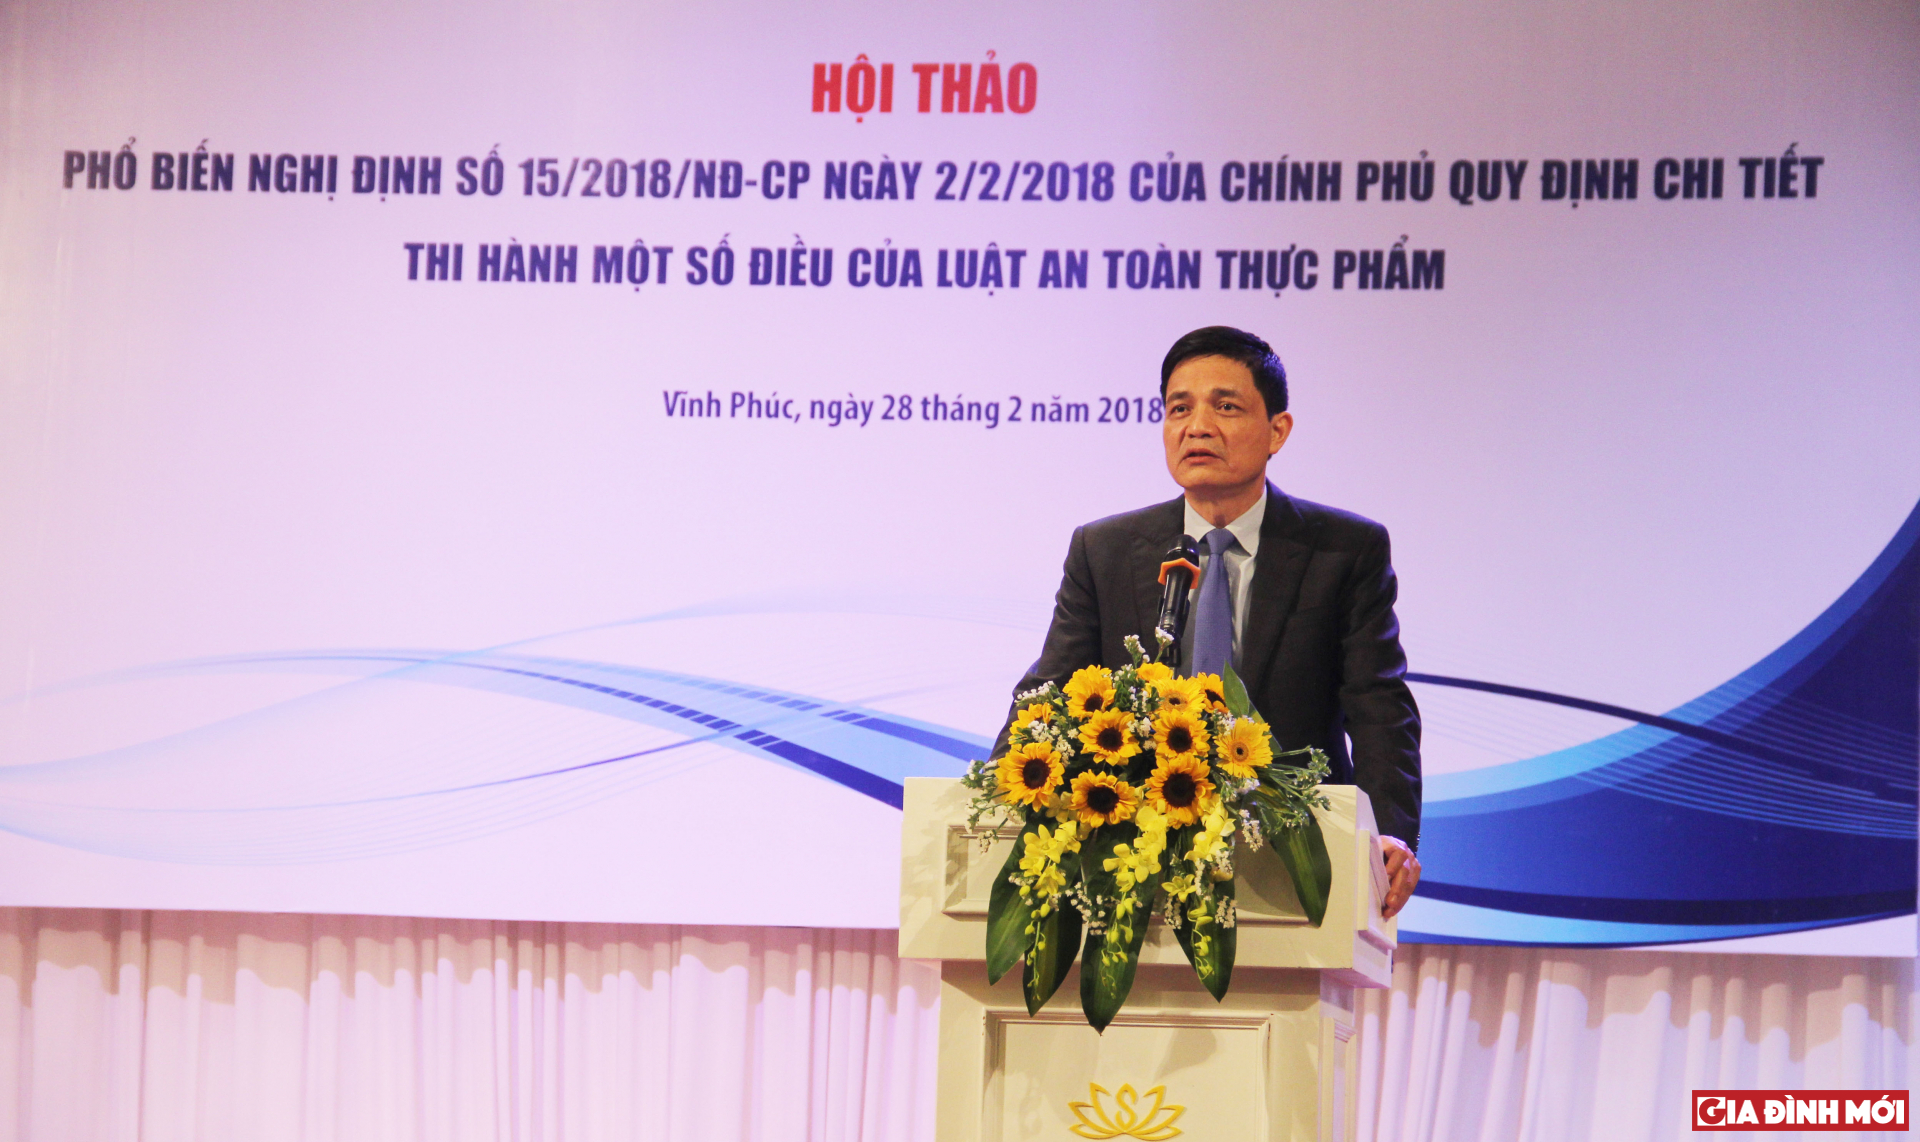 Theo ông Nguyễn Thanh Phong, Cục trưởng Cục An toàn thực phẩm cho hay, Nghị định 15 có thay đổi 11 nội dung chính, trong đó quy định về thủ tục tự công bố sản phẩm là có sự thay đổi lớn nhất số với trước đó.